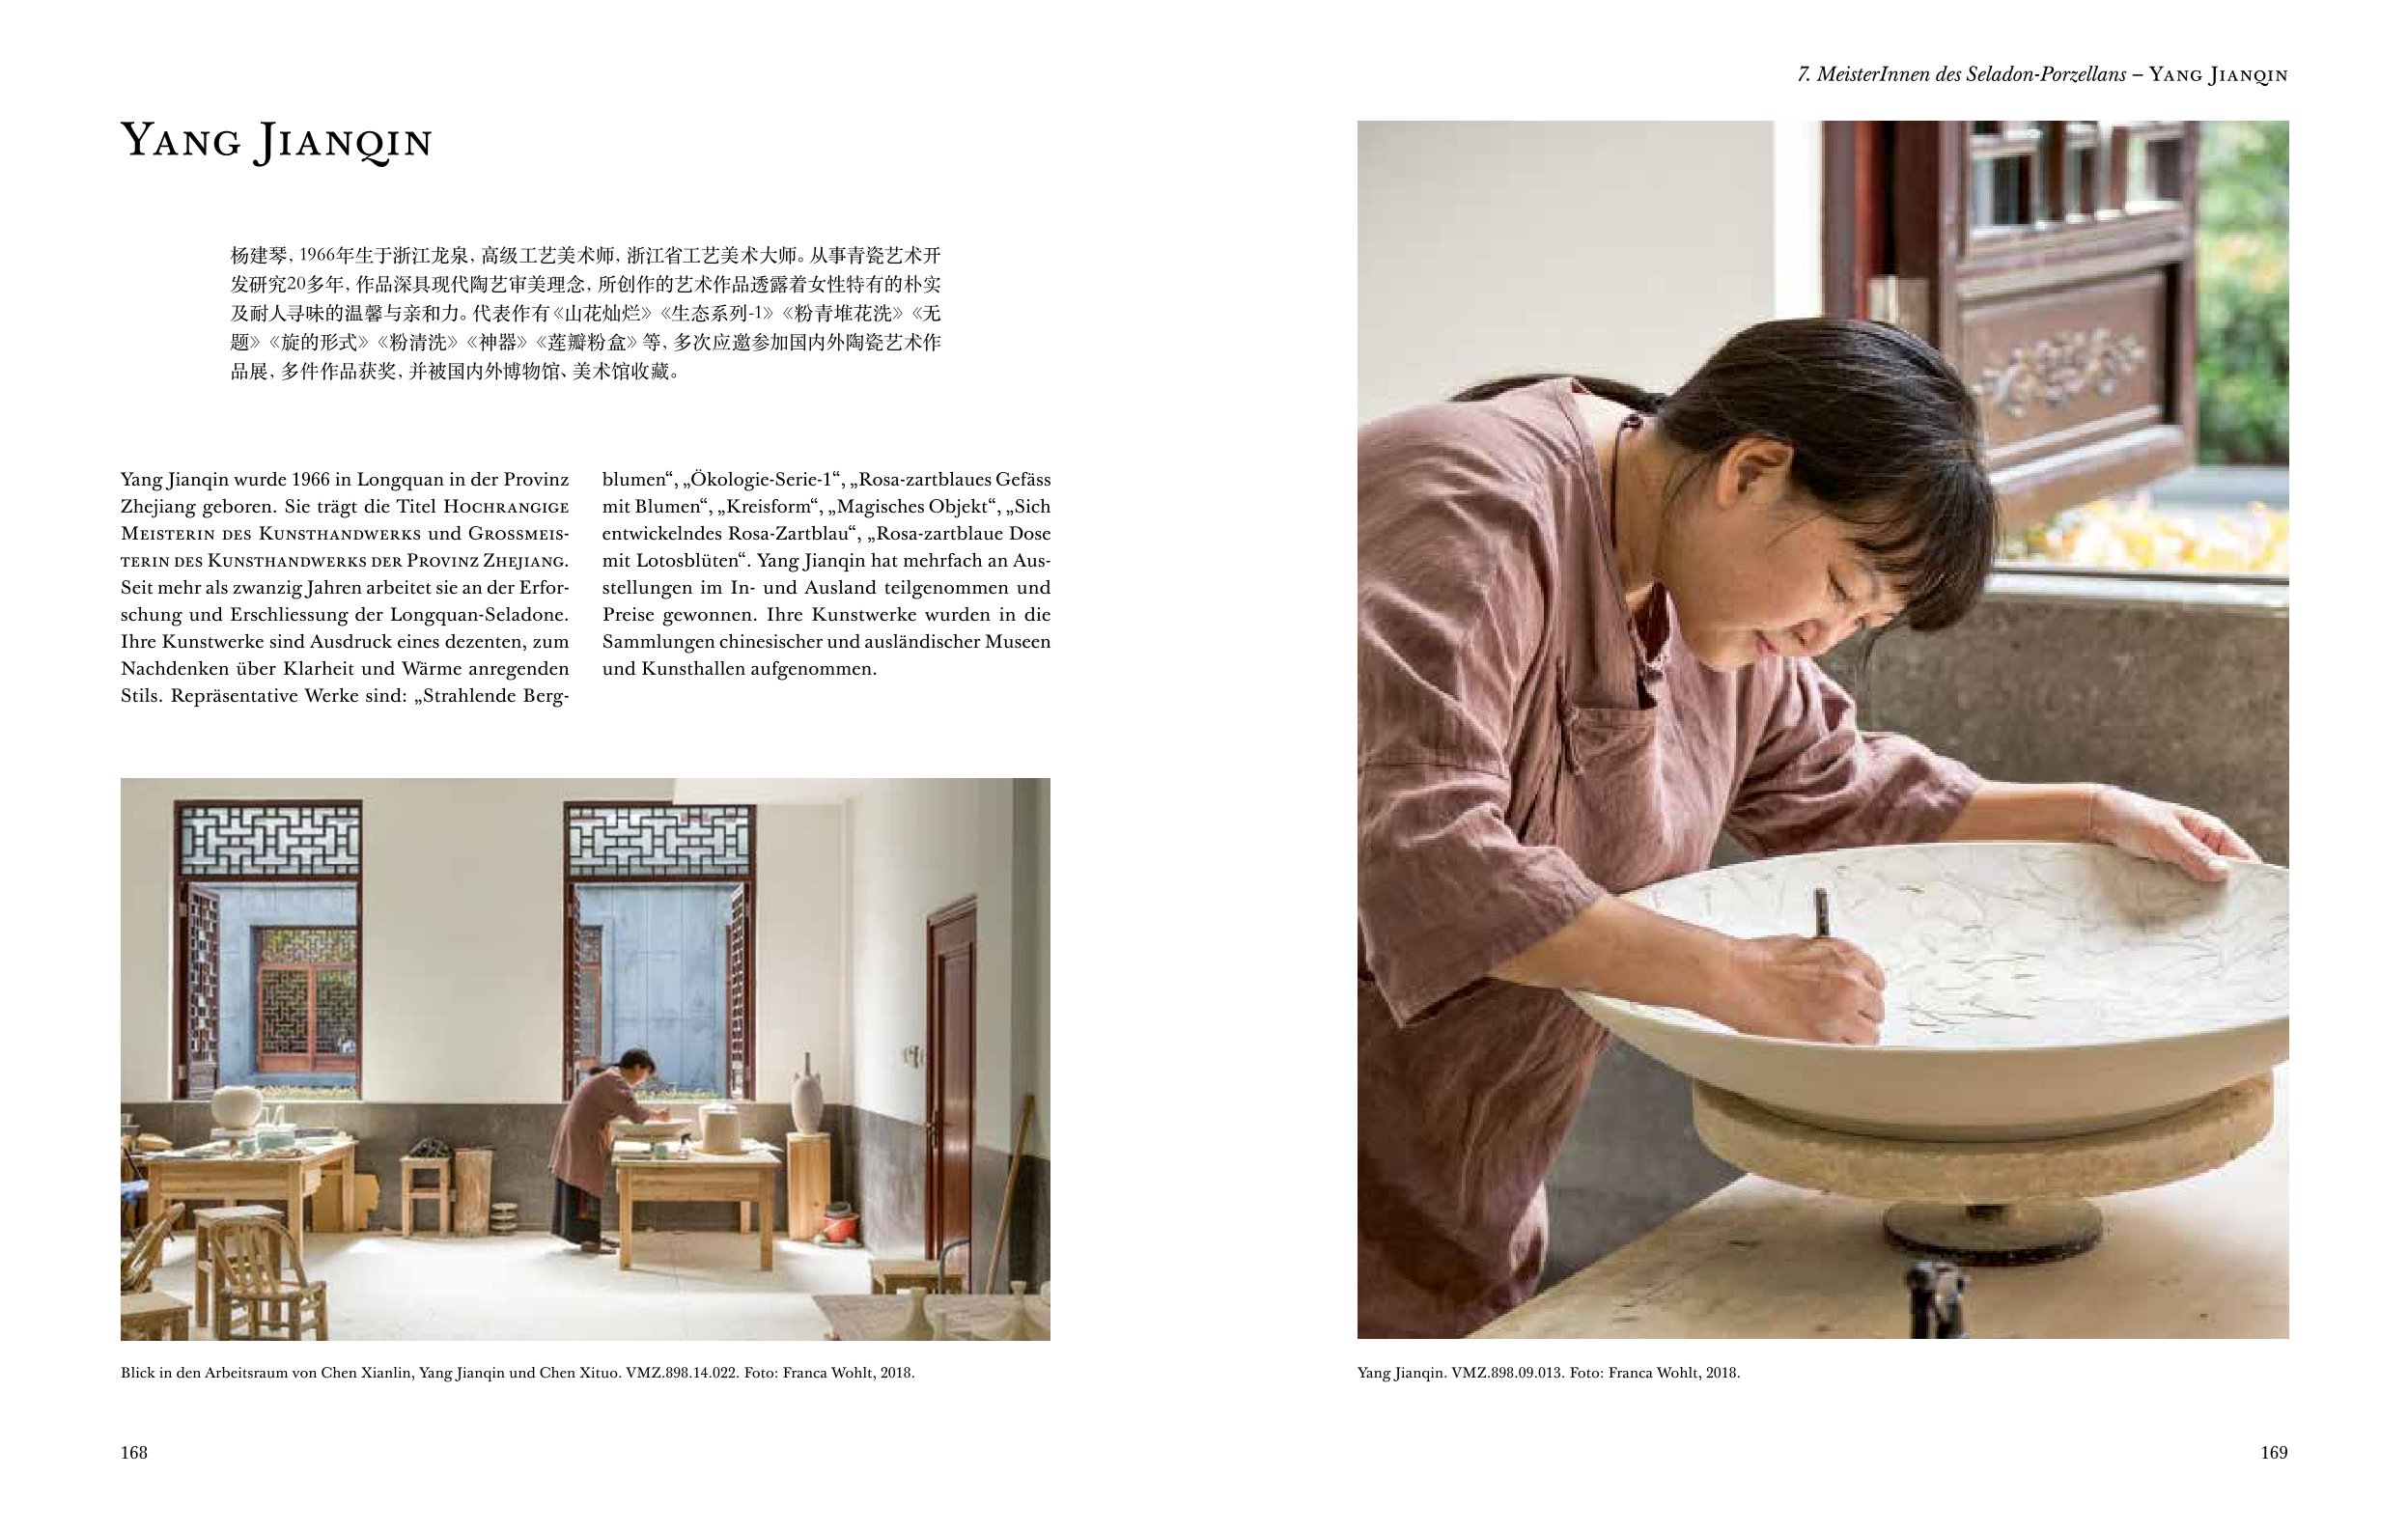 Seladon im Augenmerk | Jadegleiche Porzellane und ihre Meister in Longquan, VR China